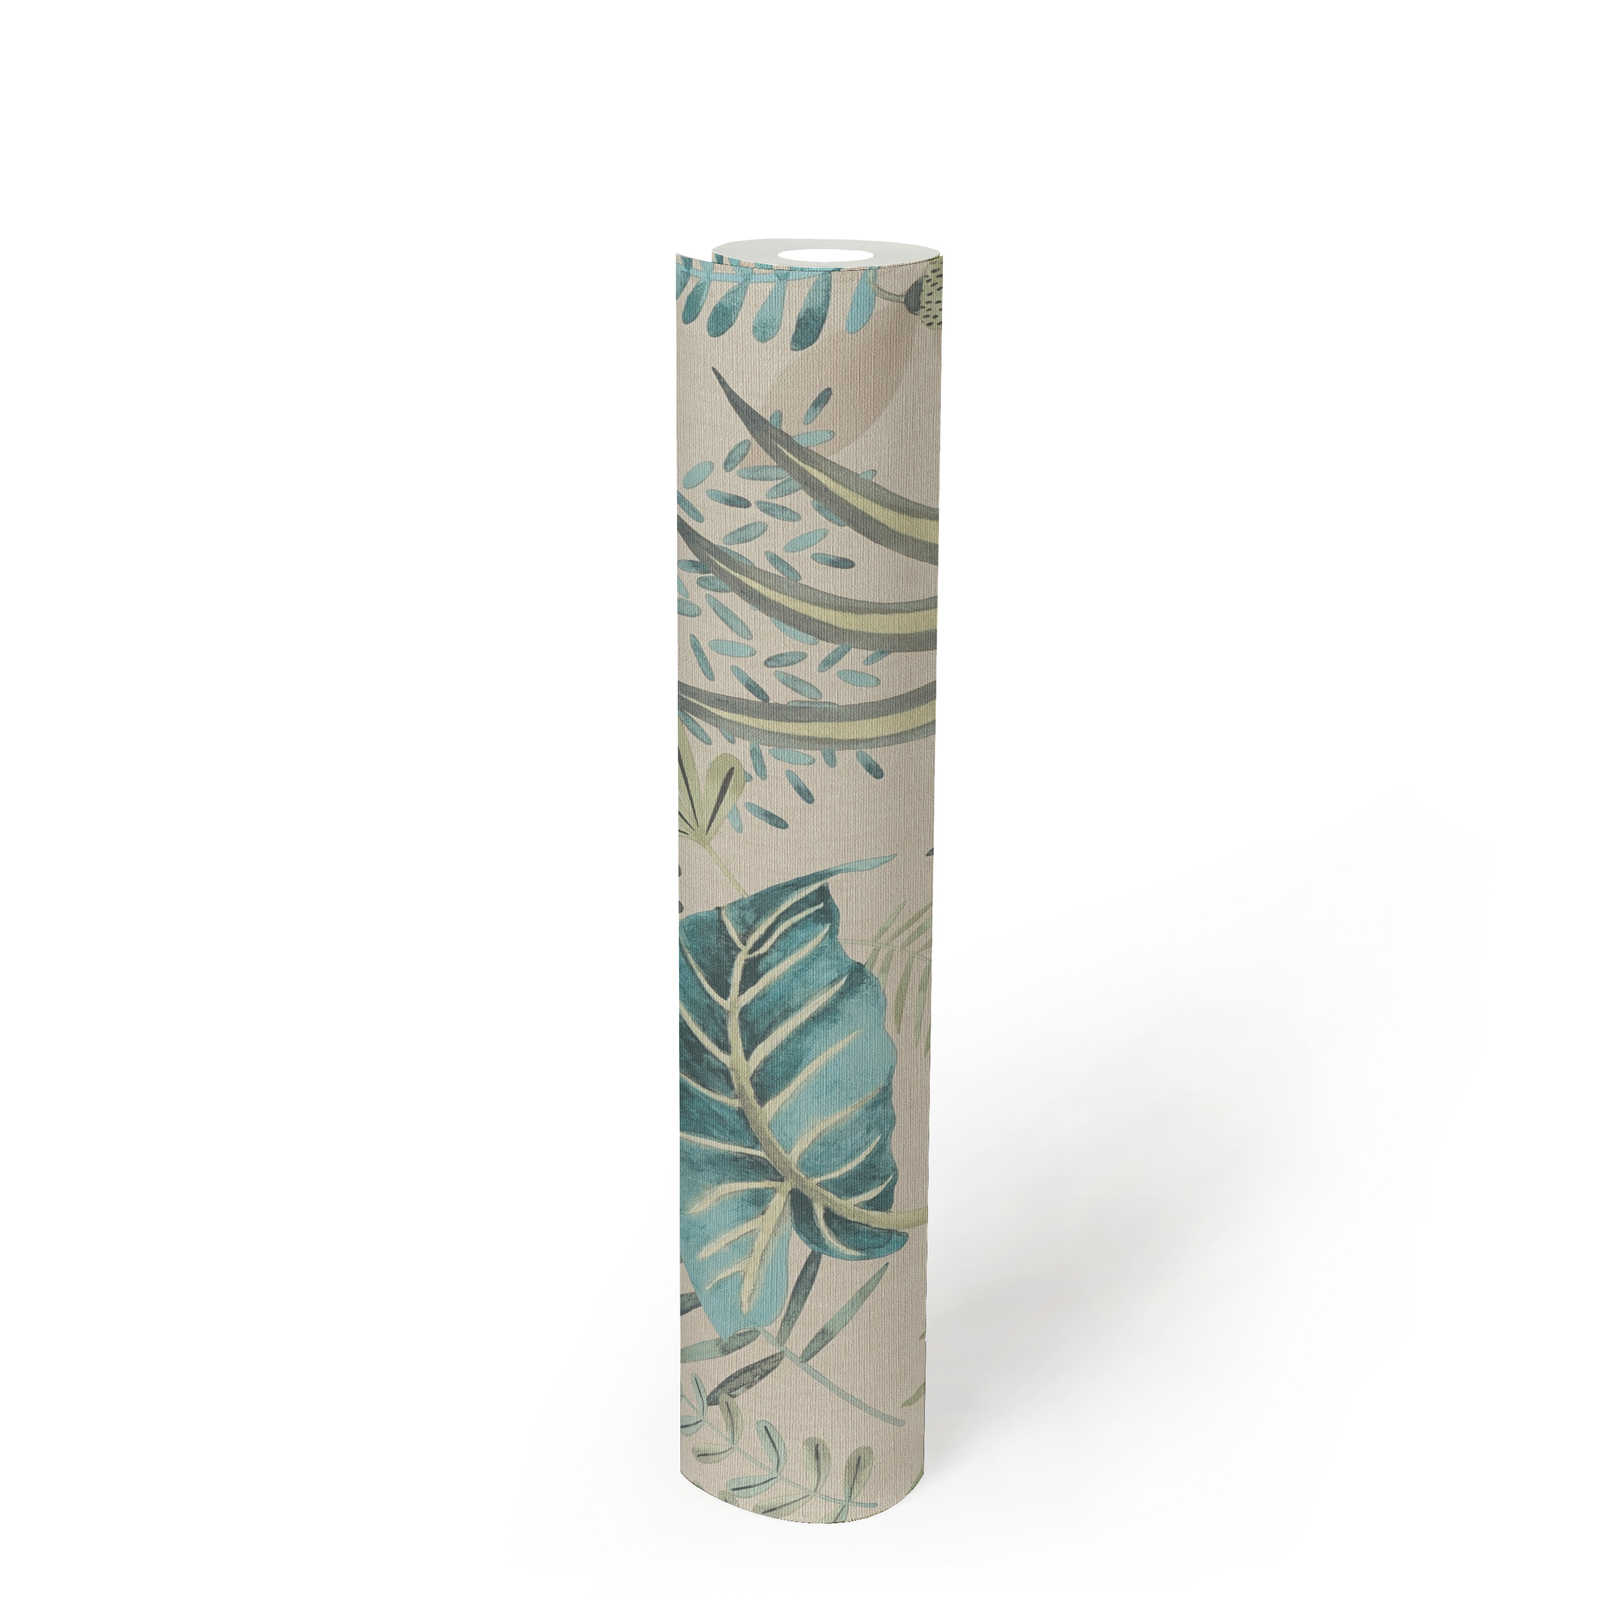             wallpaper floral with mixed leaves light textured, matt - beige, green, blue
        